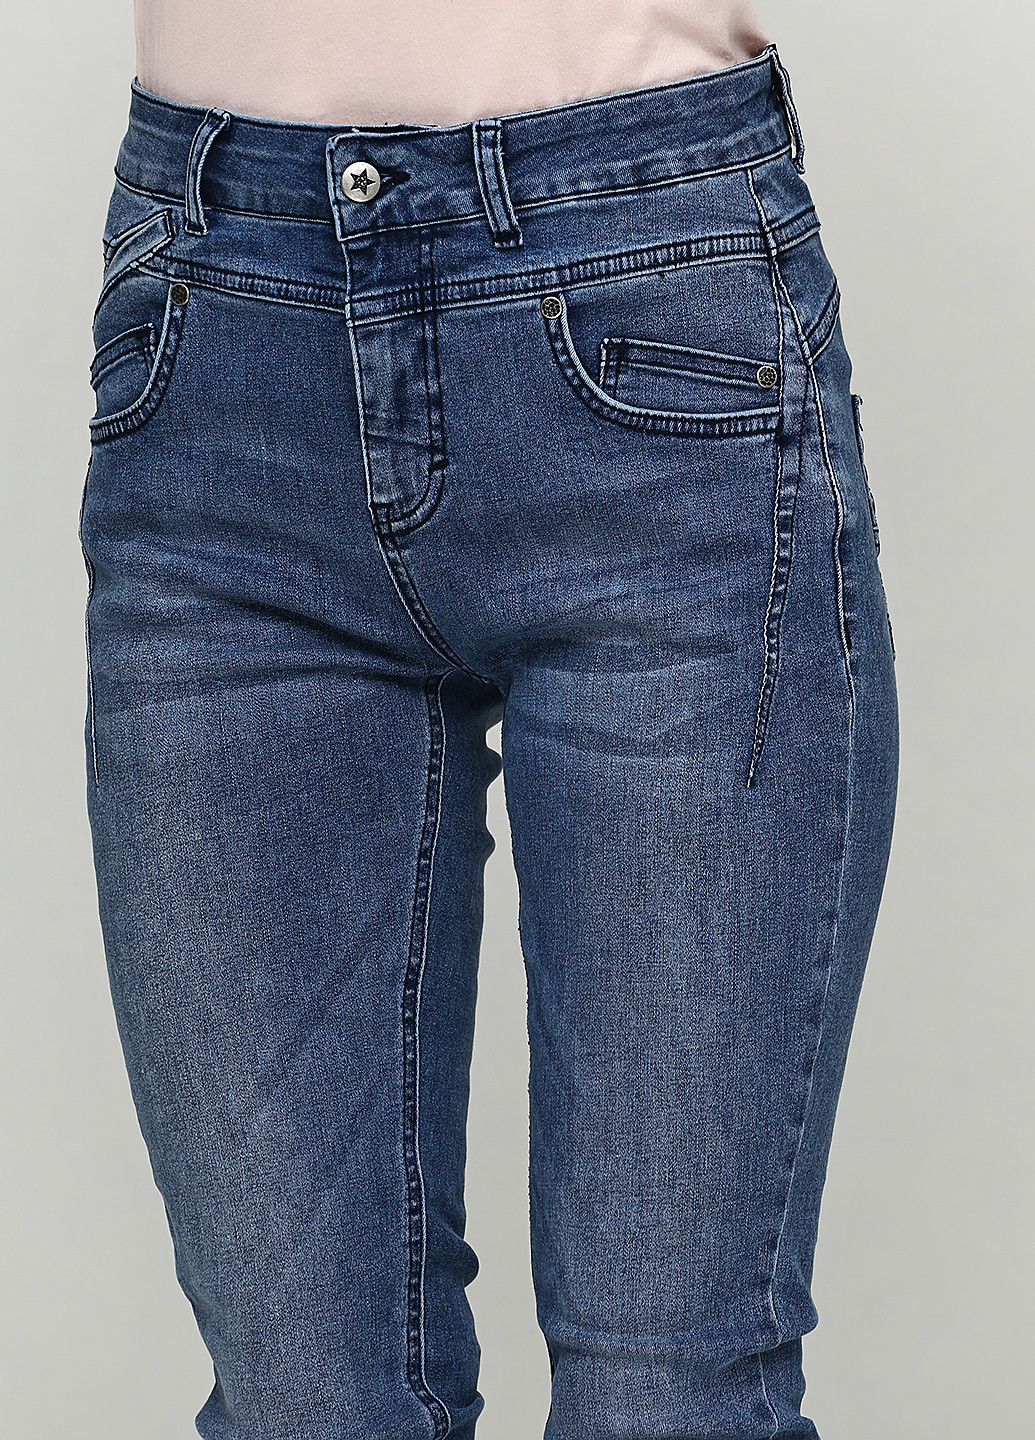 Костюм (жакет, джинсы) Imitz брючный однотонный синий джинсовый